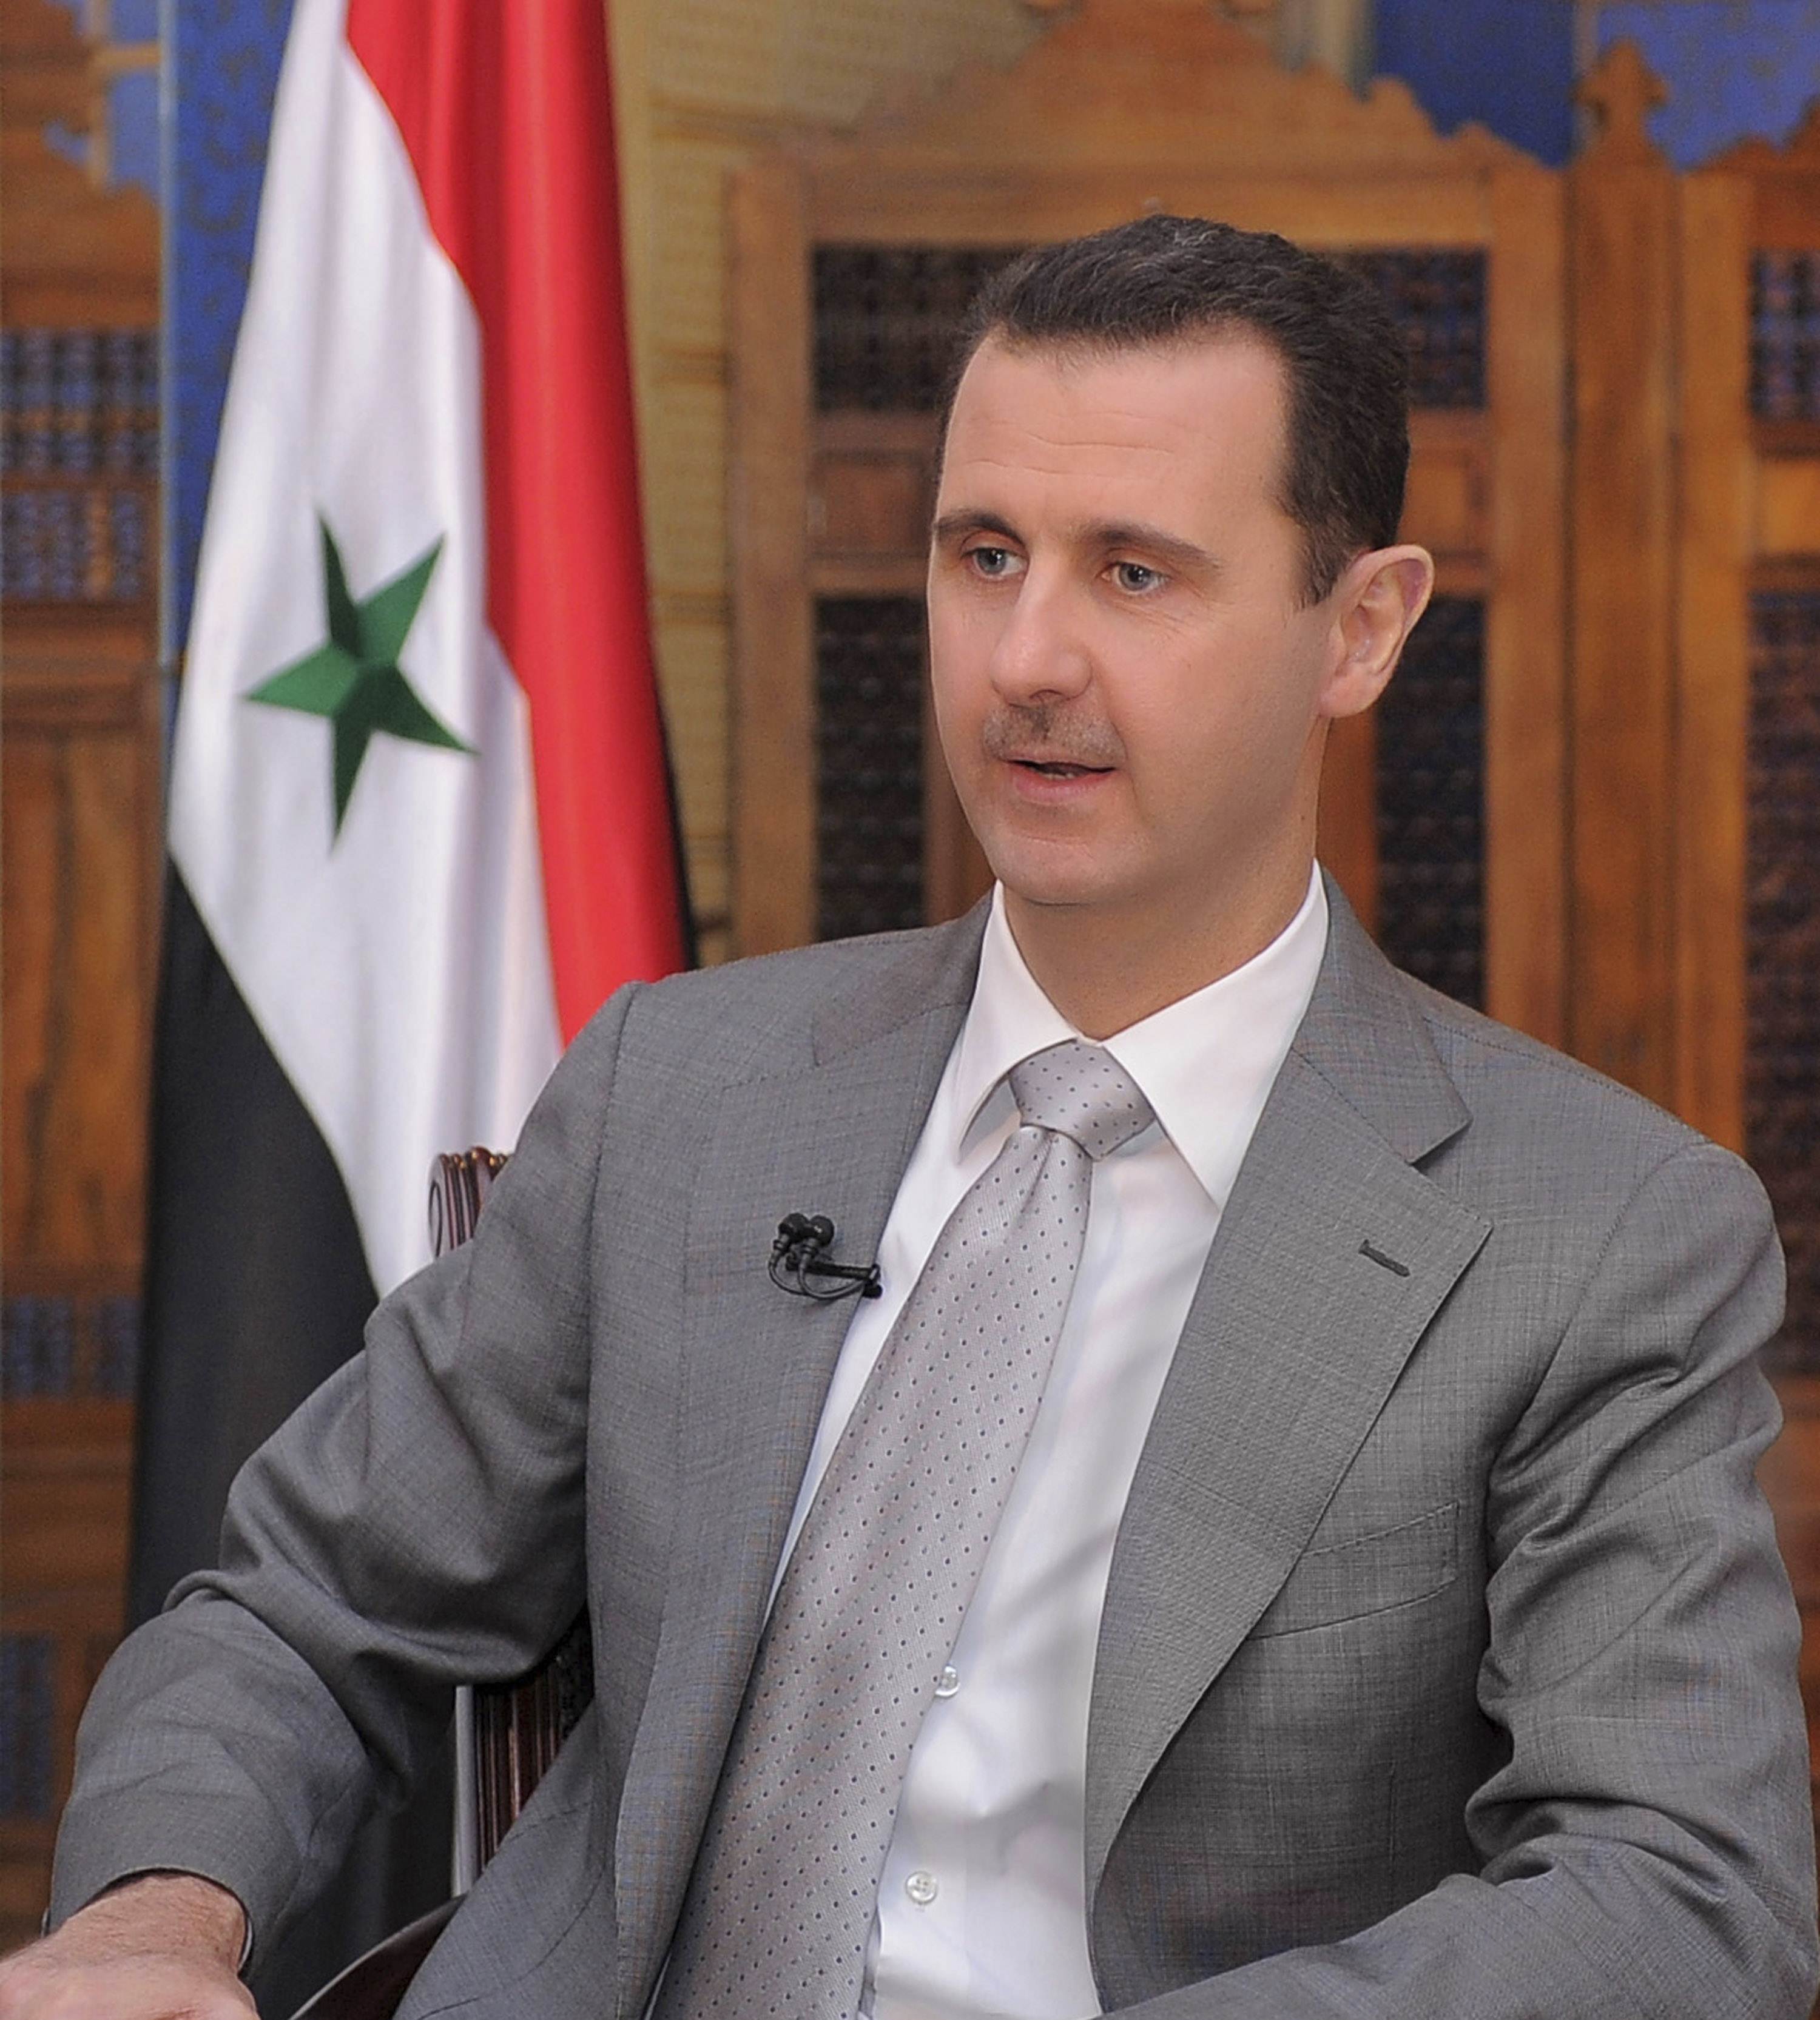 Σημάδια οπισθοχώρησης από τον Άσαντ;